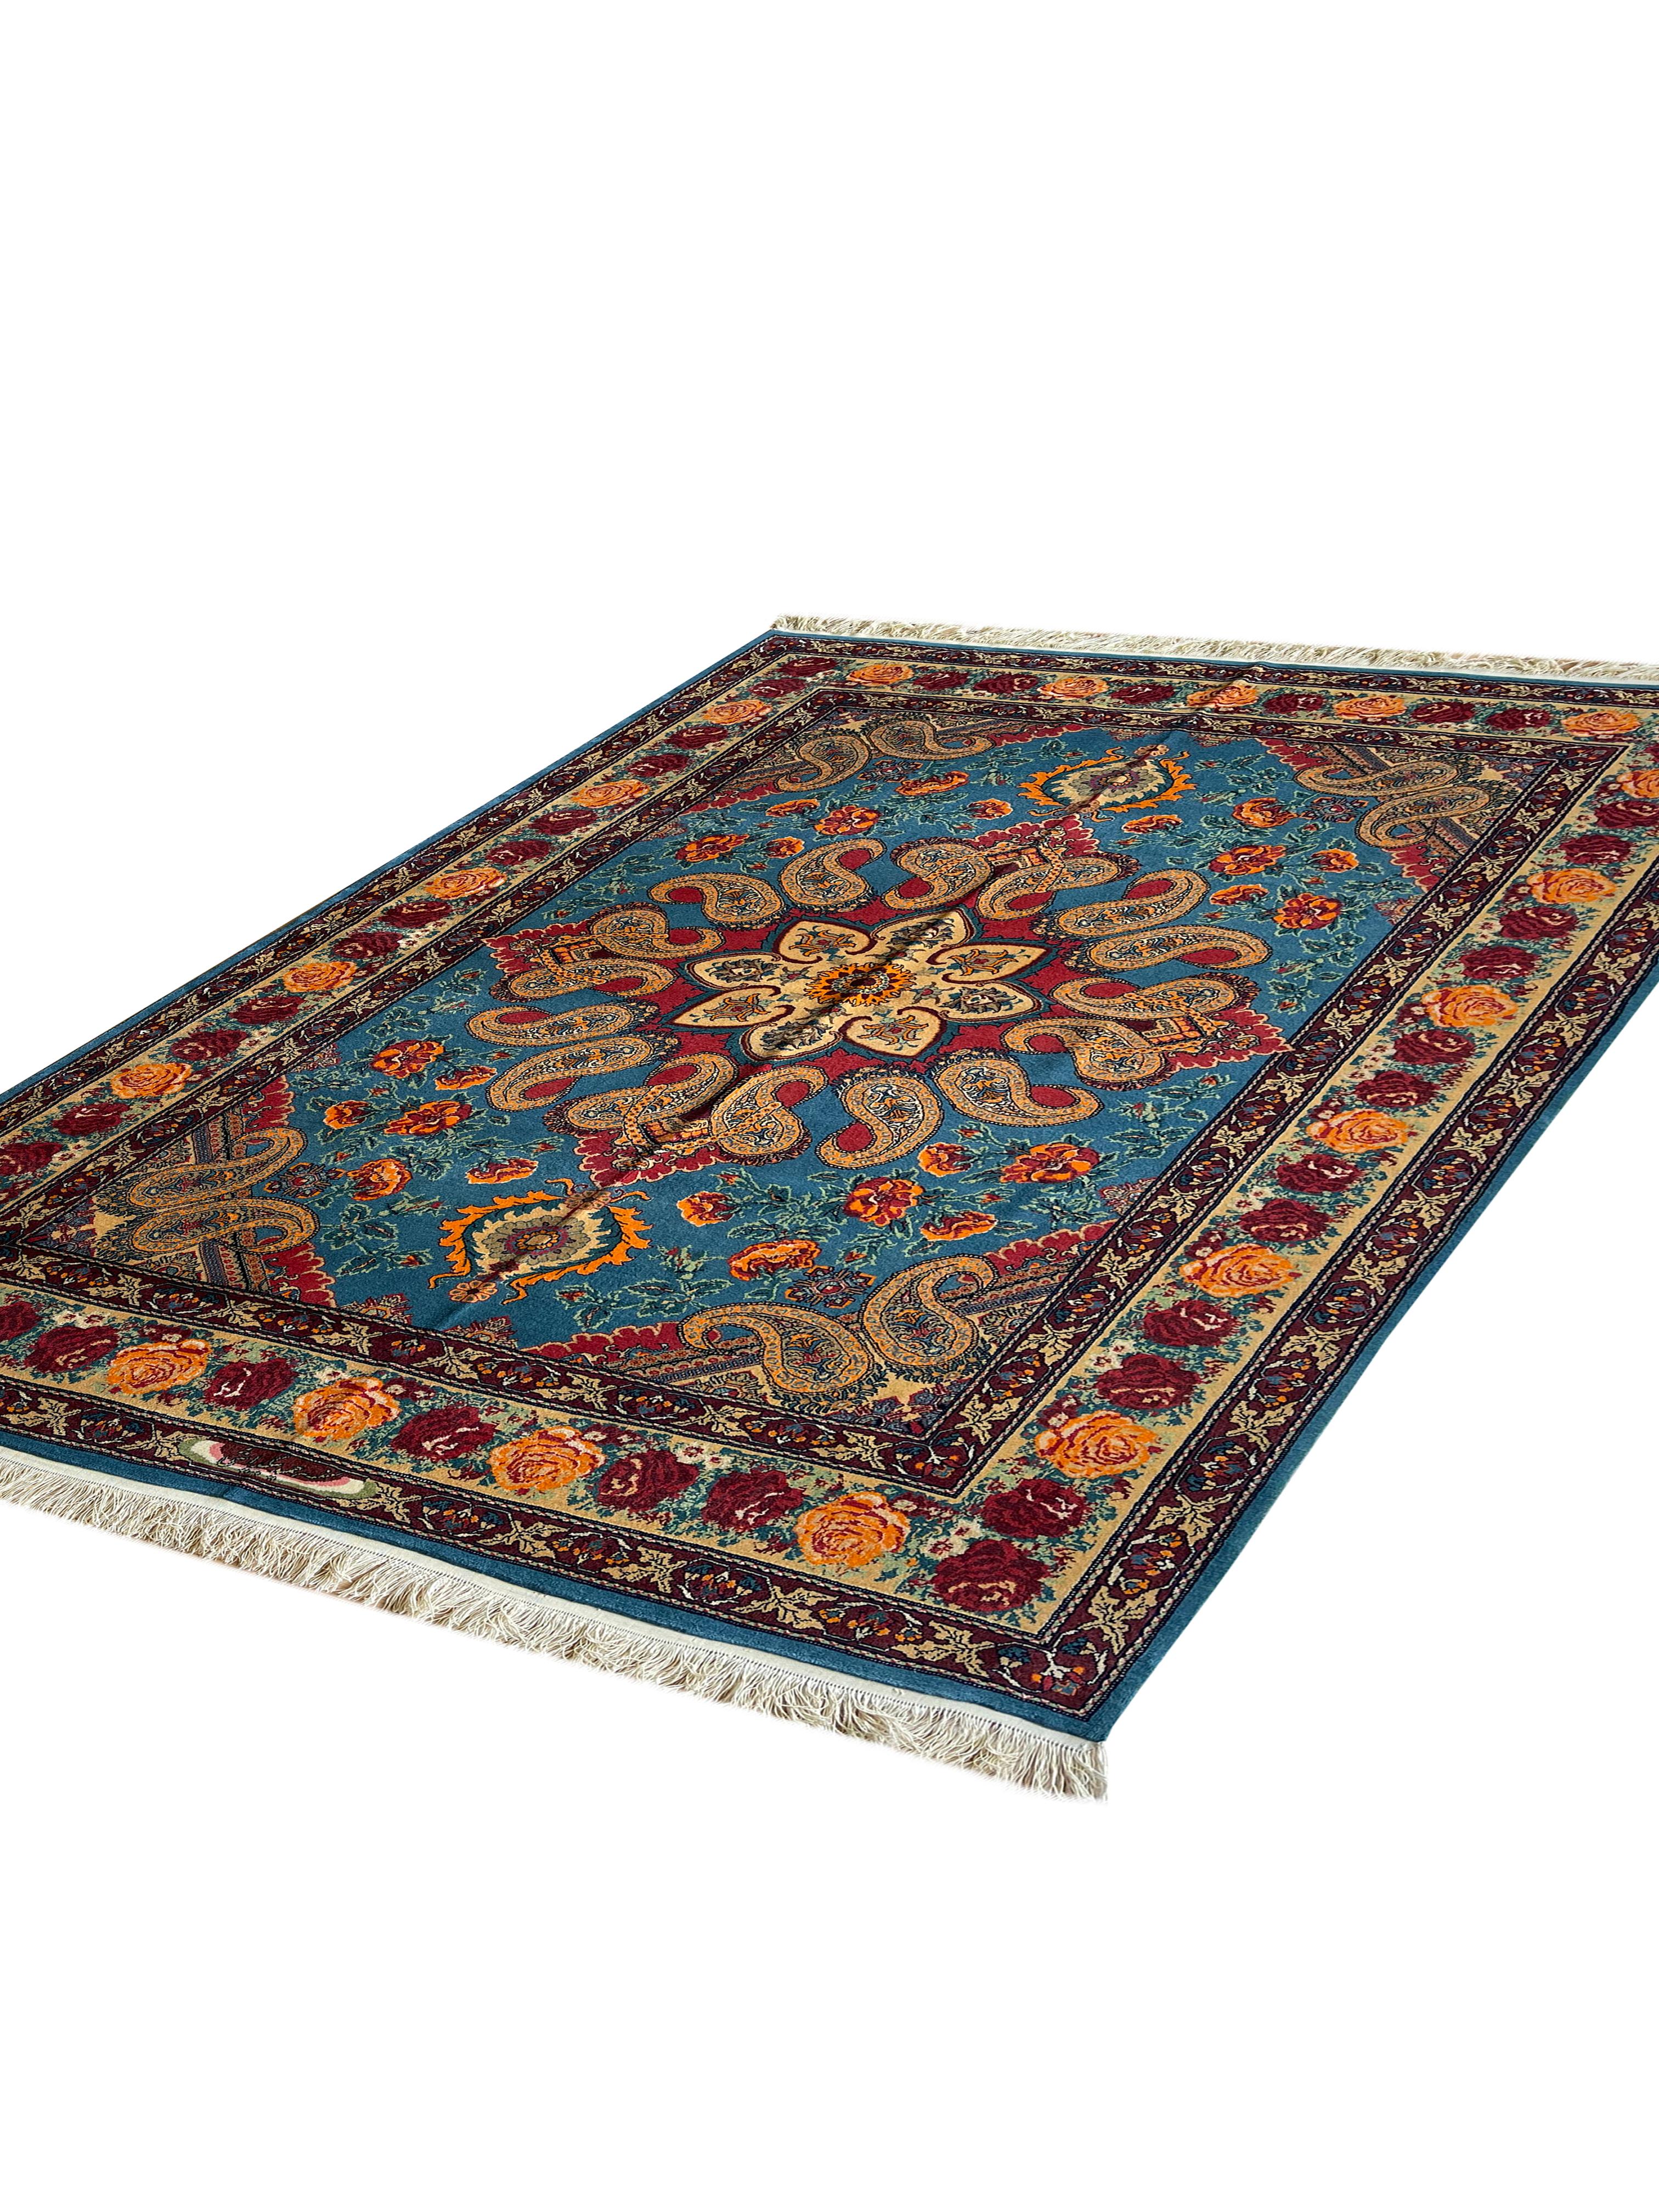 Exklusiver, prächtiger, handgefertigter Teppich aus hochwertigen MATERIALEN und entworfen von einer sehr hochwertigen Teppichwerkstatt.
Der Hintergrund dieses Blumenteppichs zeigt diesen glitzernden blauen Teppich als sehr lebendig und glänzend.